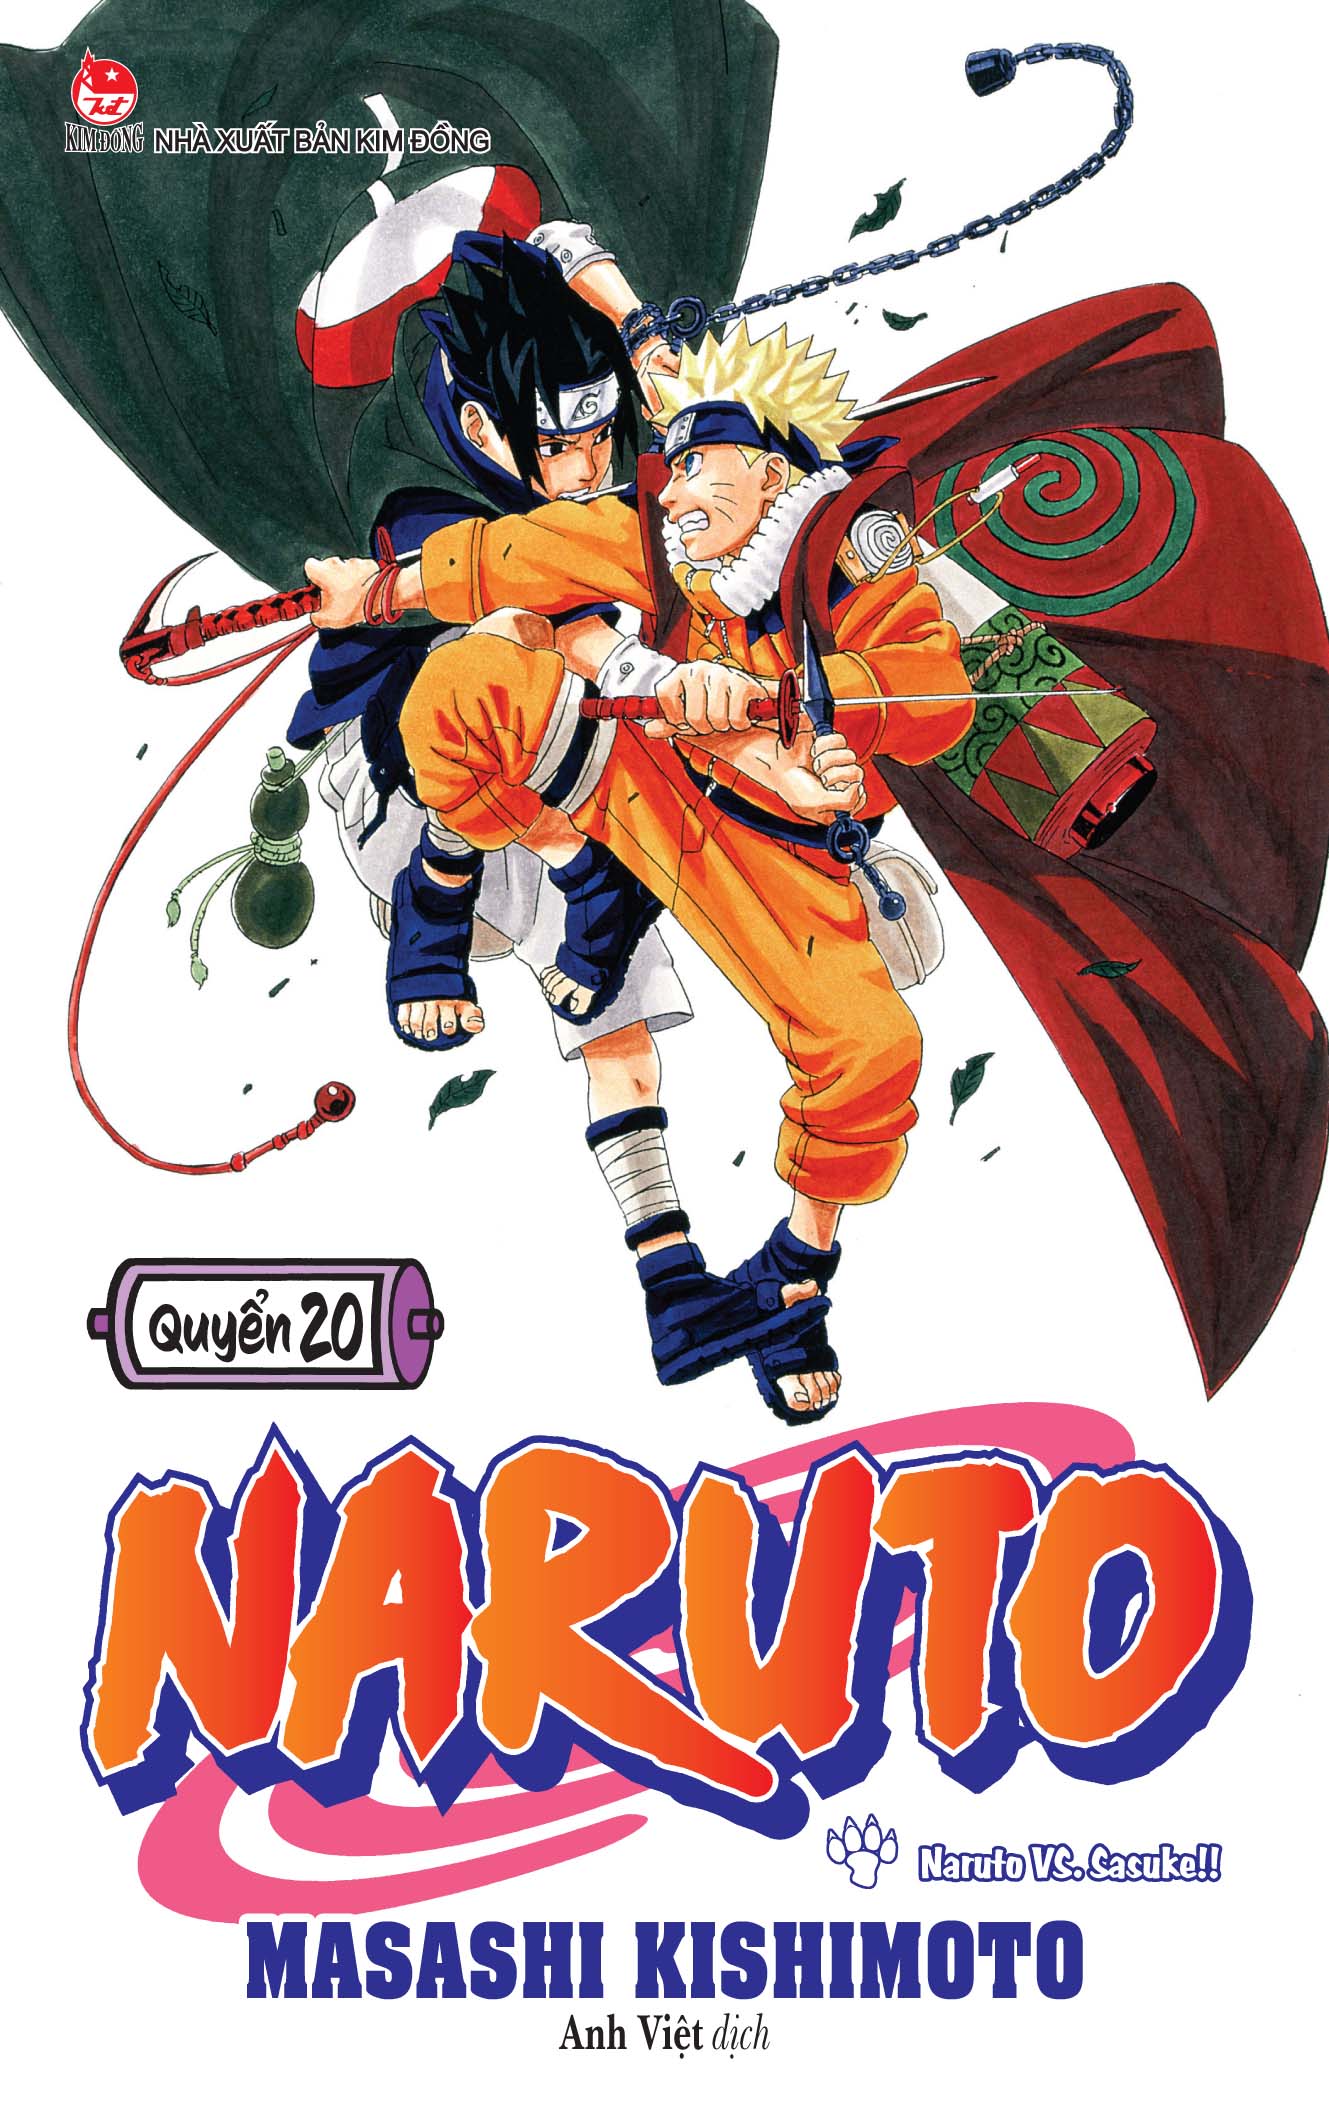 Mấy dòng lảm nhảm về Naruto - Về Sasusaku và Naruhina - Wattpad